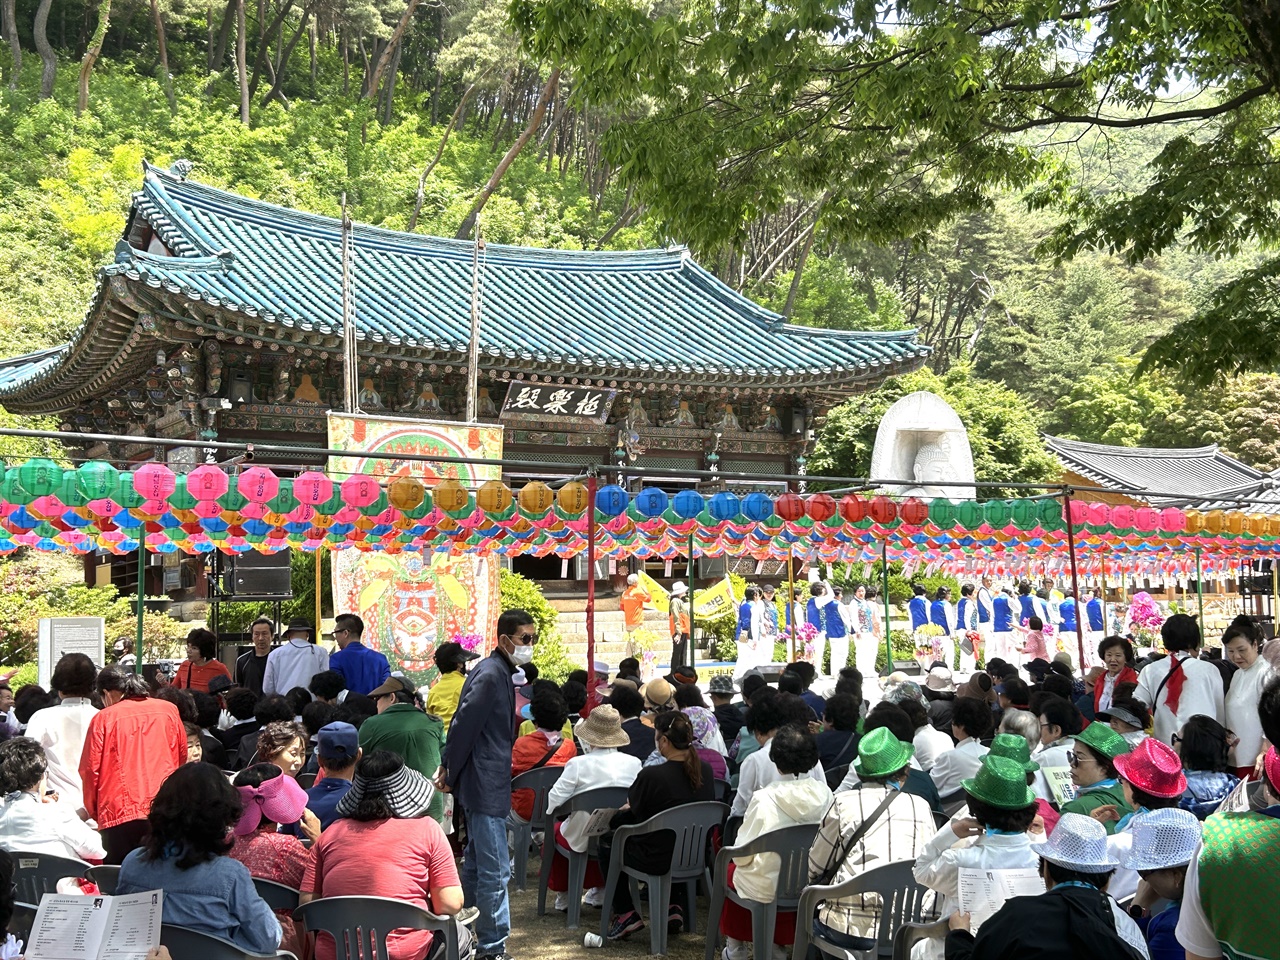 부처님 오신 날을 앞두고 예산 향천사에서 산사음악회가 열렸다.